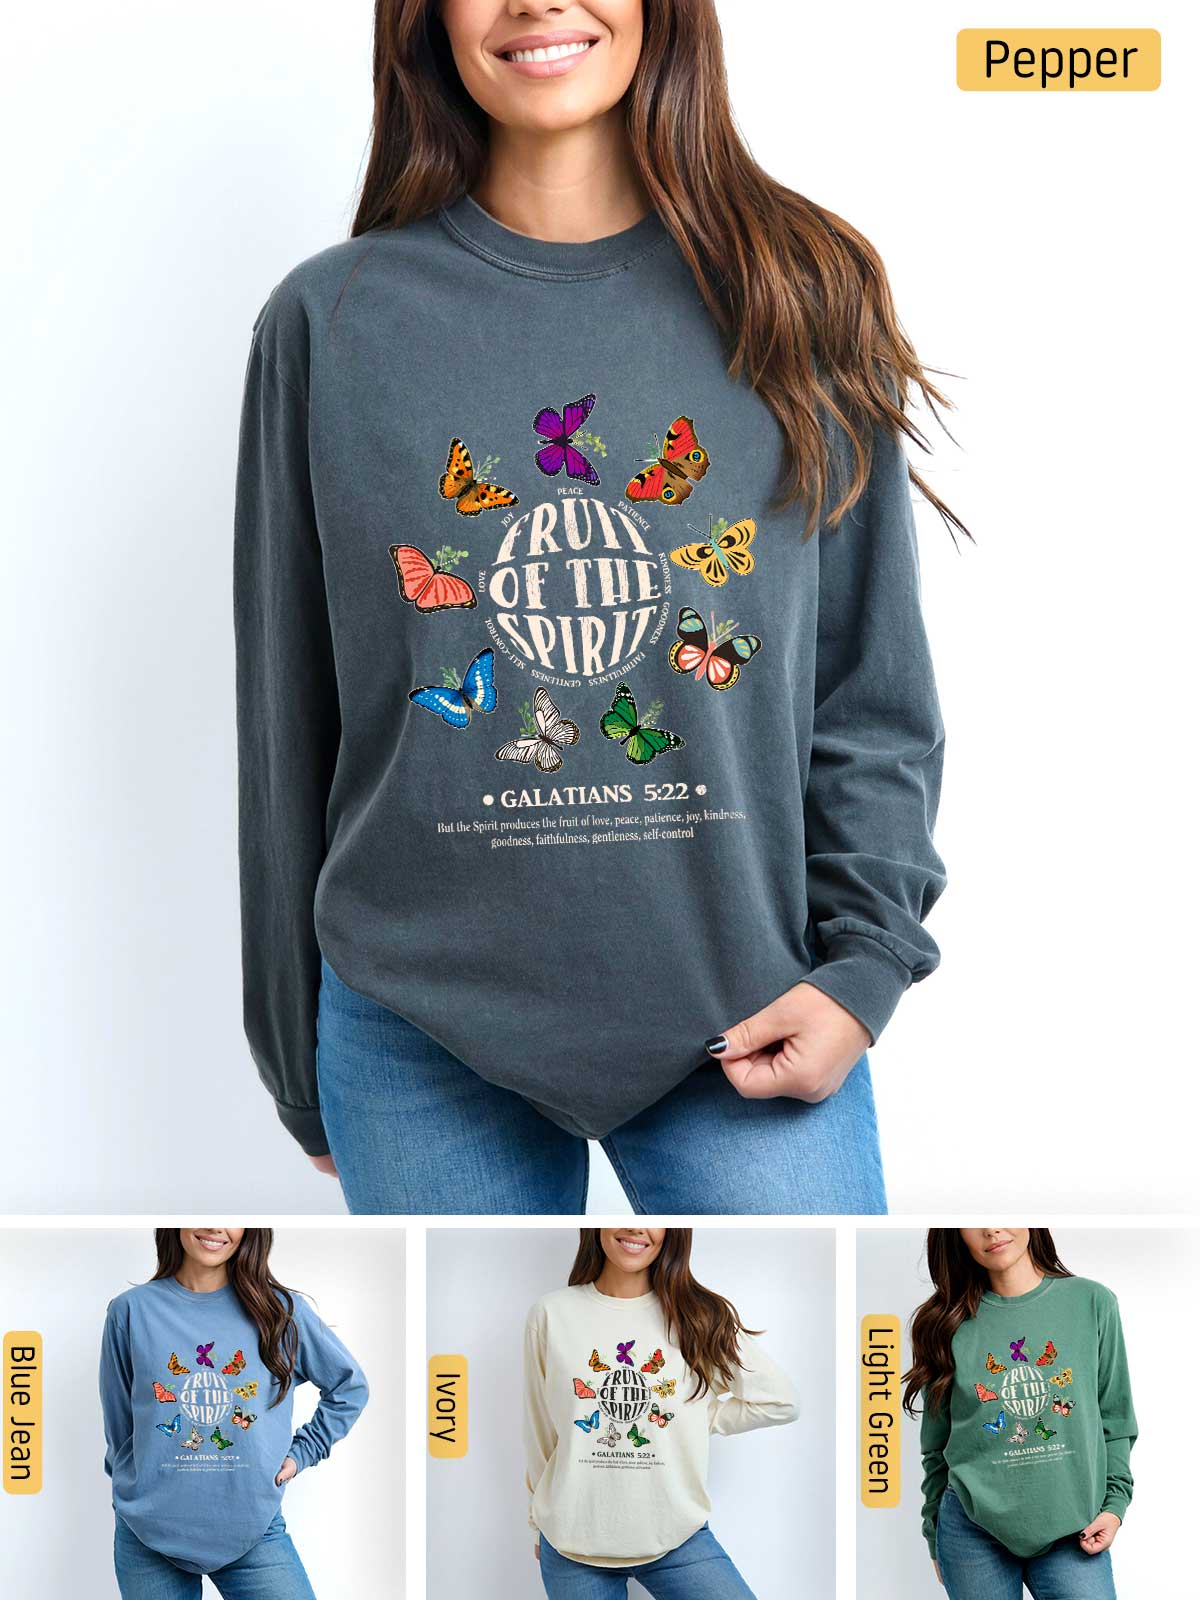 a woman wearing a sweatshirt with butterflies on it